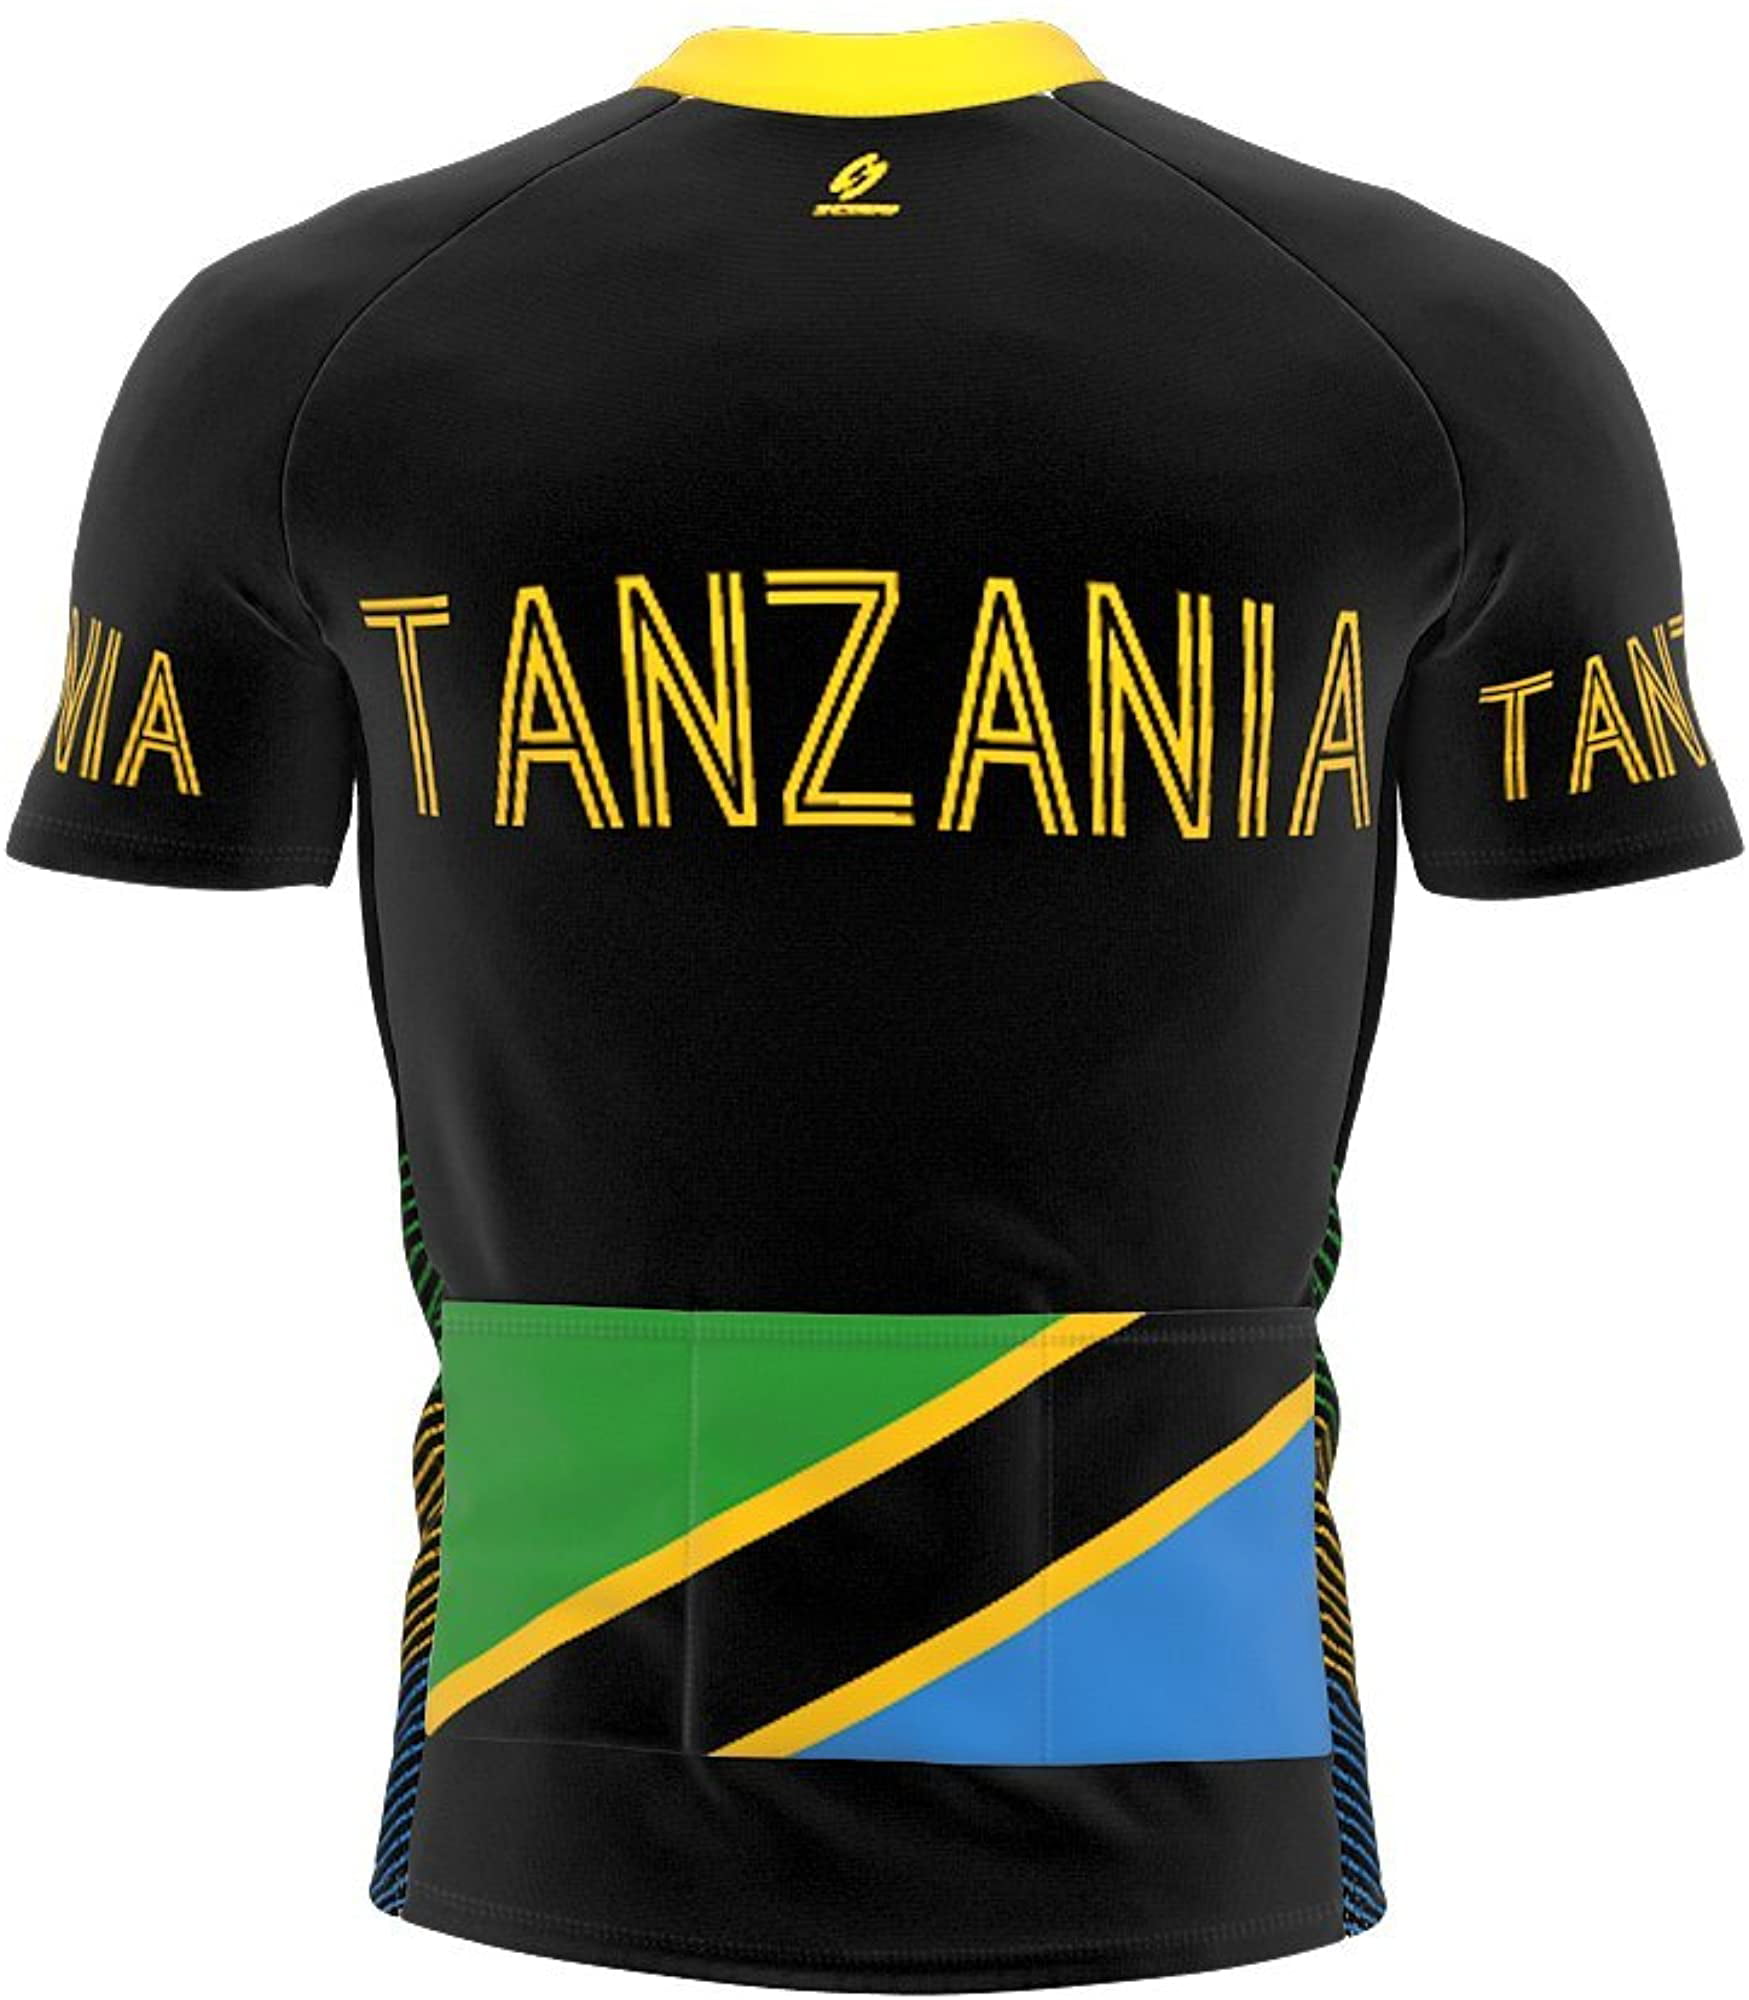 ScudoPro Tanzania Full Zipper Bike Short Sleeve Cycling Jersey for Men